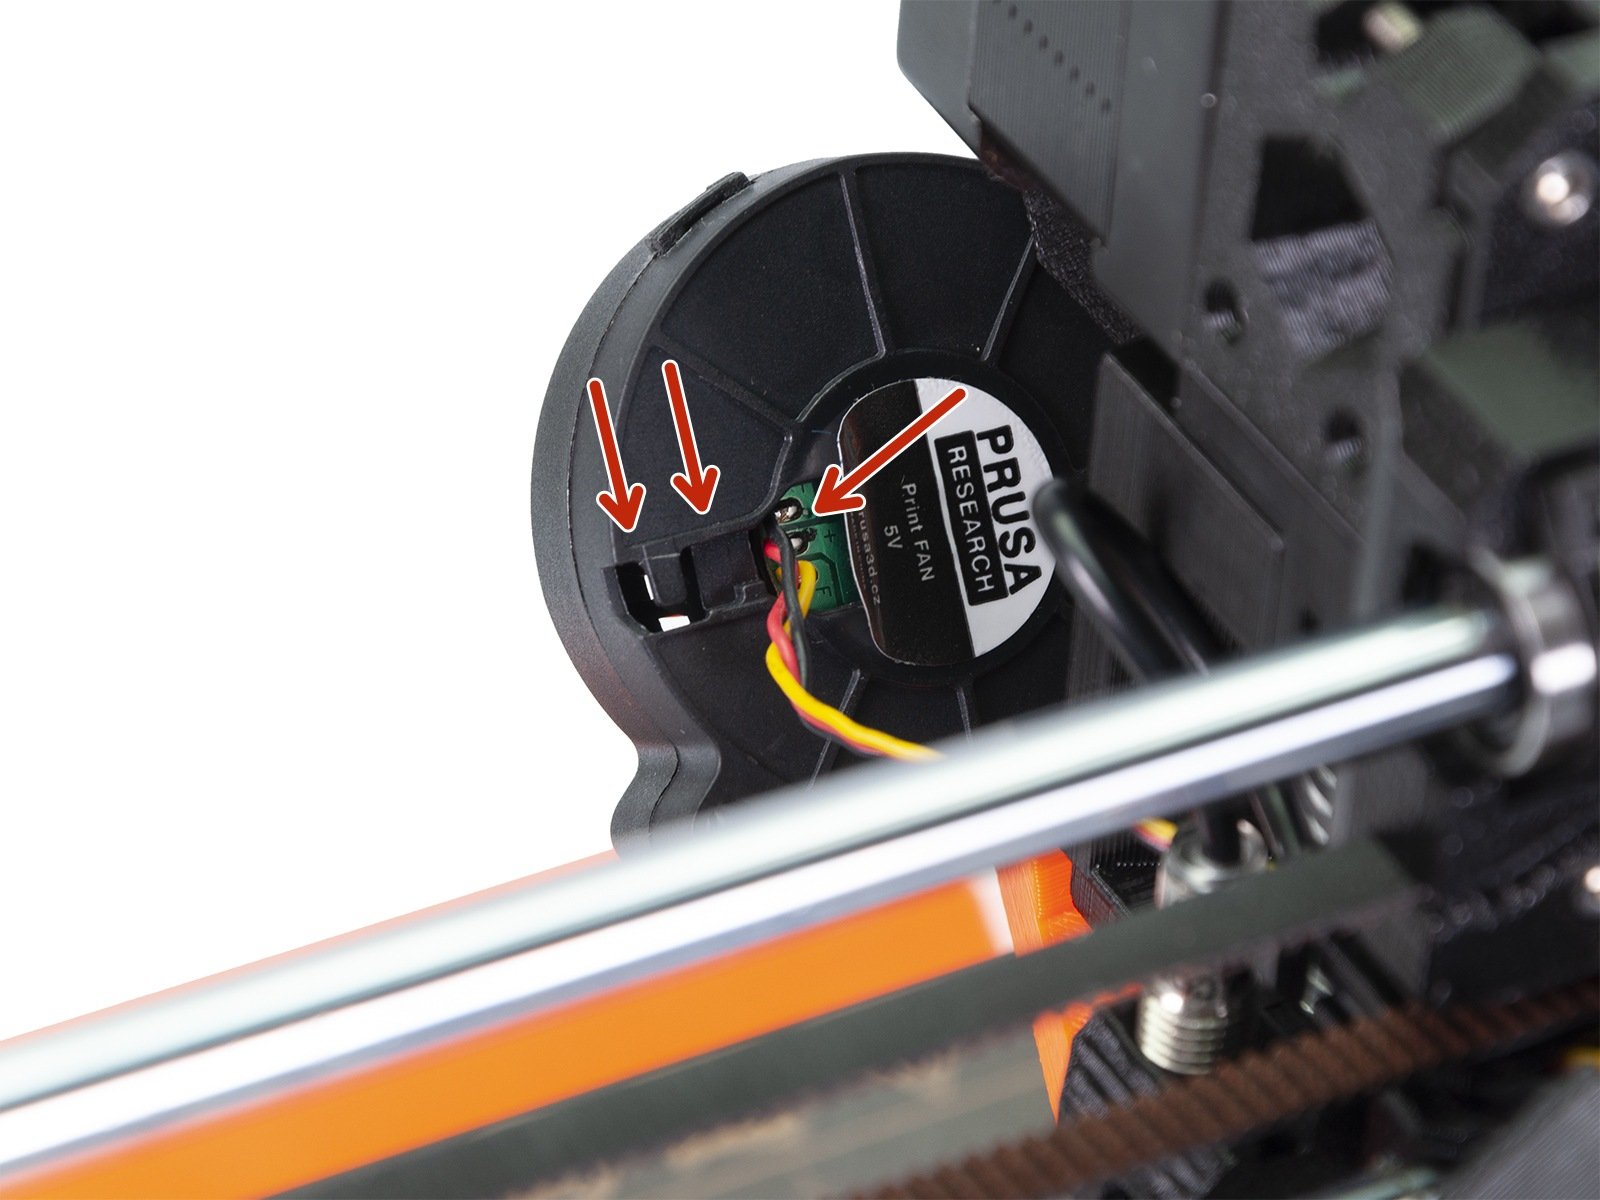 Montaż przedniego wentylatora druku - części w wersji B7/R3